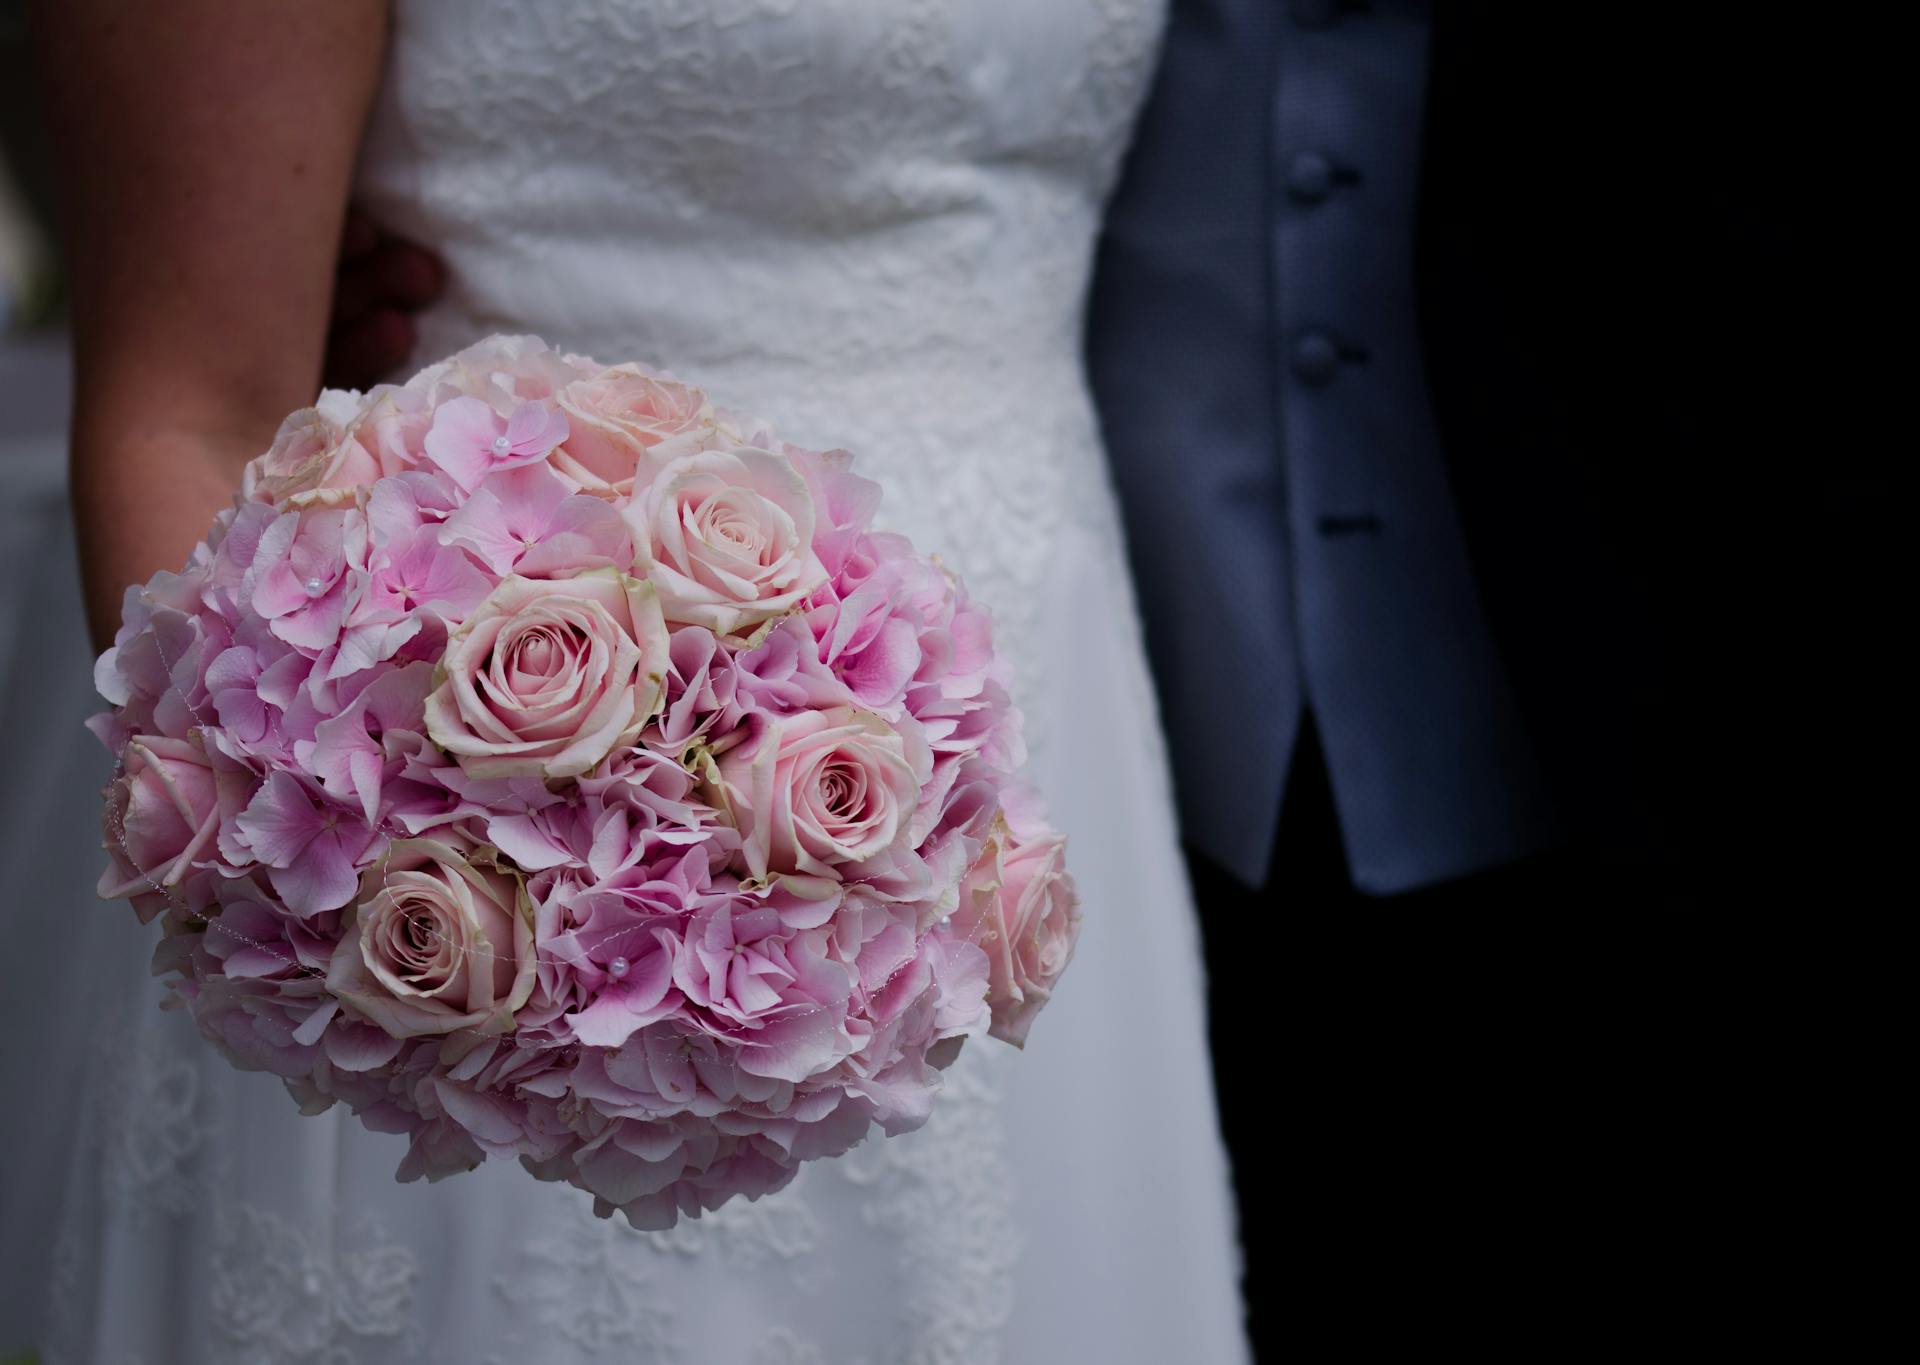 Eine Braut mit Blumen in der Hand | Quelle: Pexels